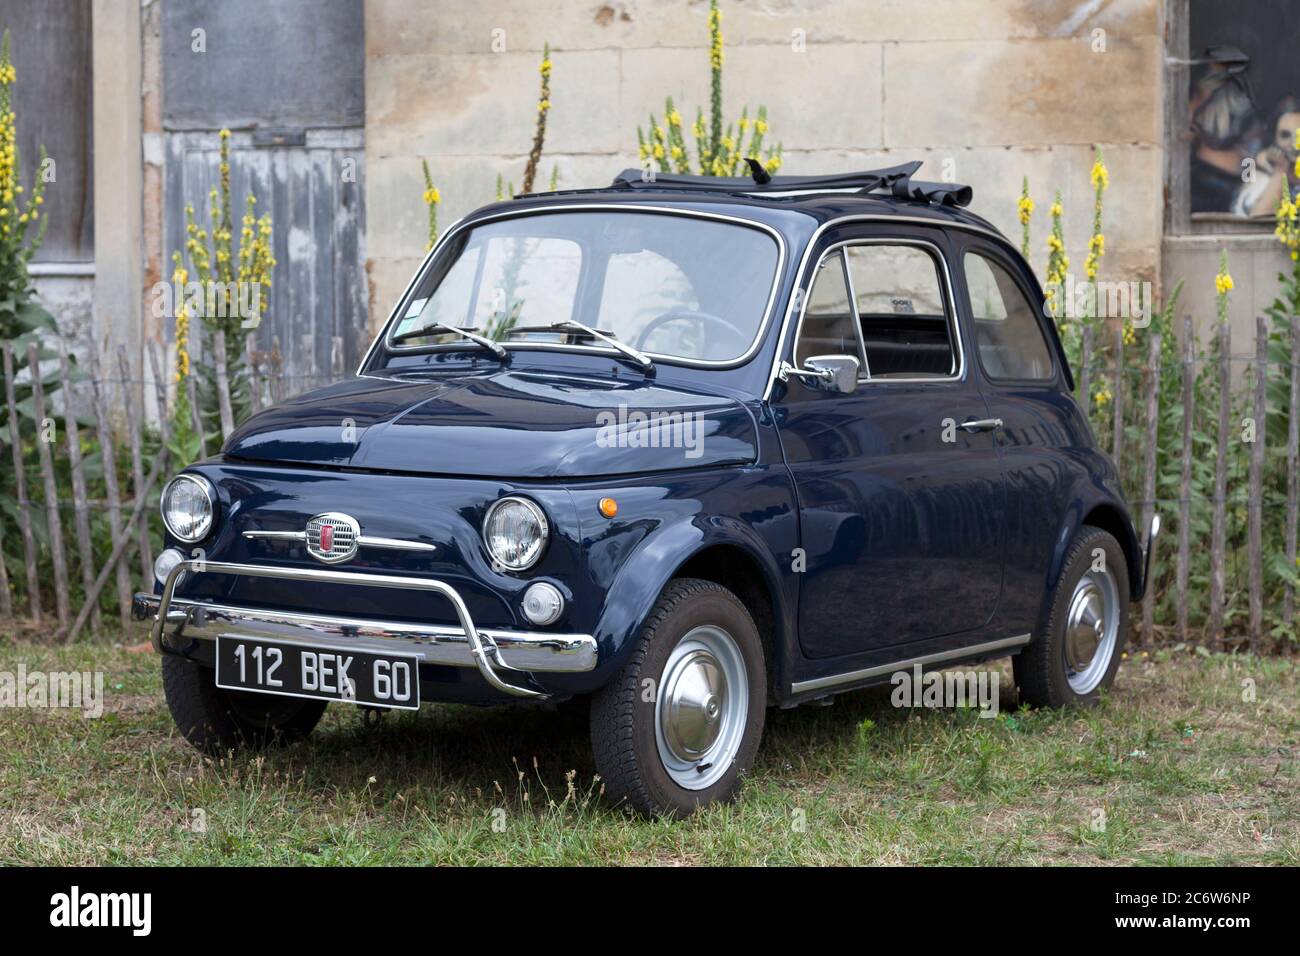 Lamorlaye, France - juillet 05 2020 : la Fiat 500 est une petite voiture urbaine qui a été fabriquée et commercialisée par Fiat automobiles de 1957 à 1975. Banque D'Images